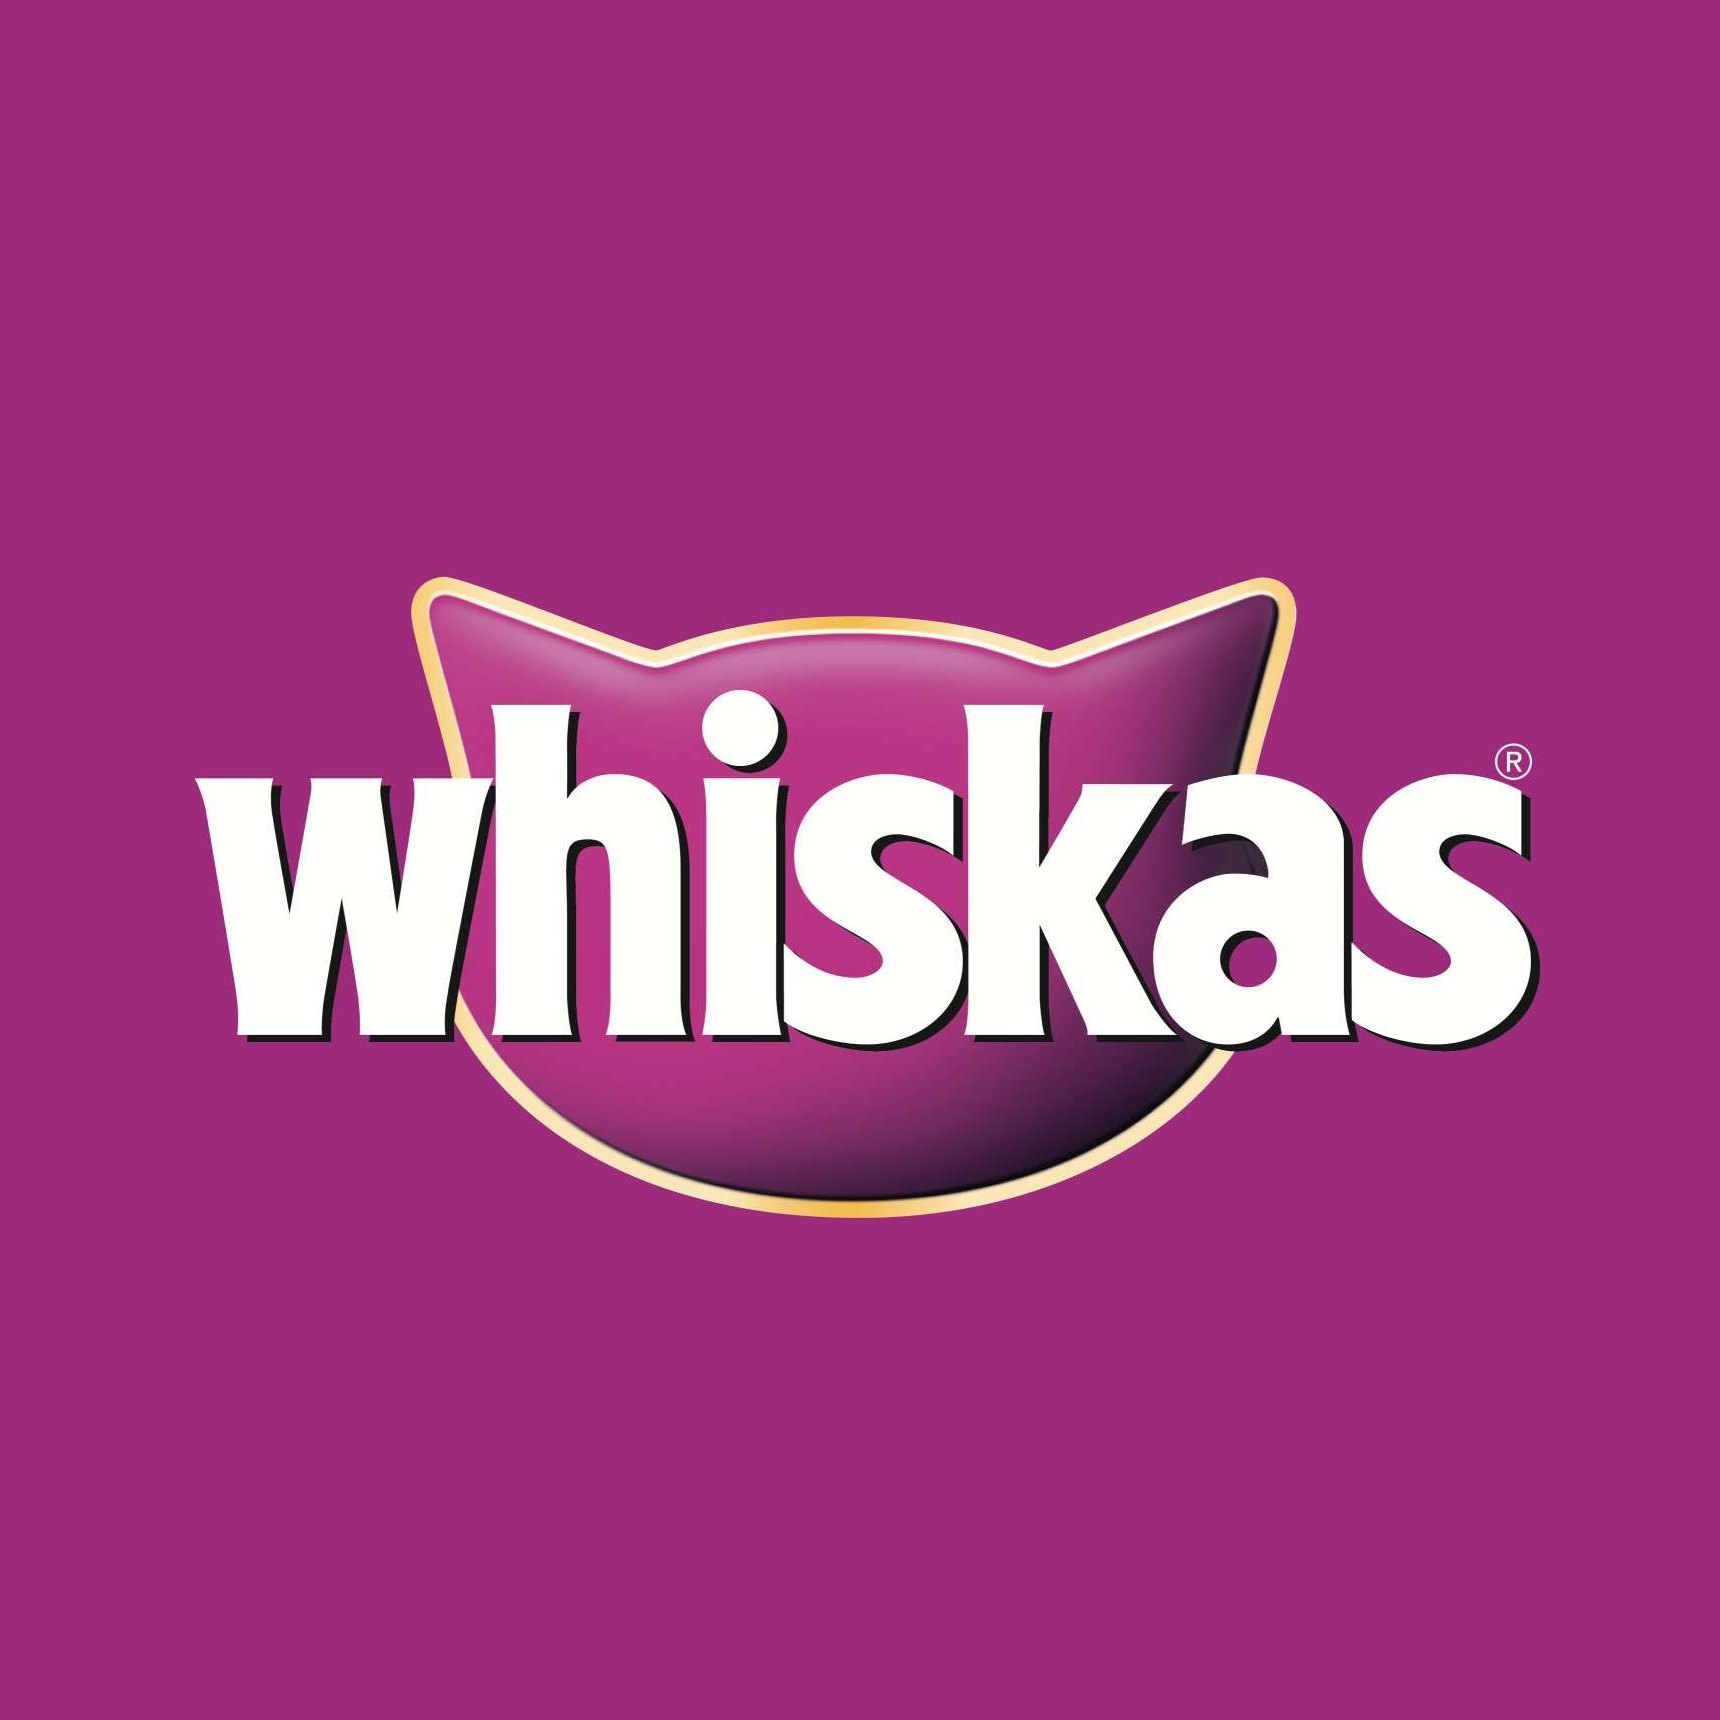 whiskas-image